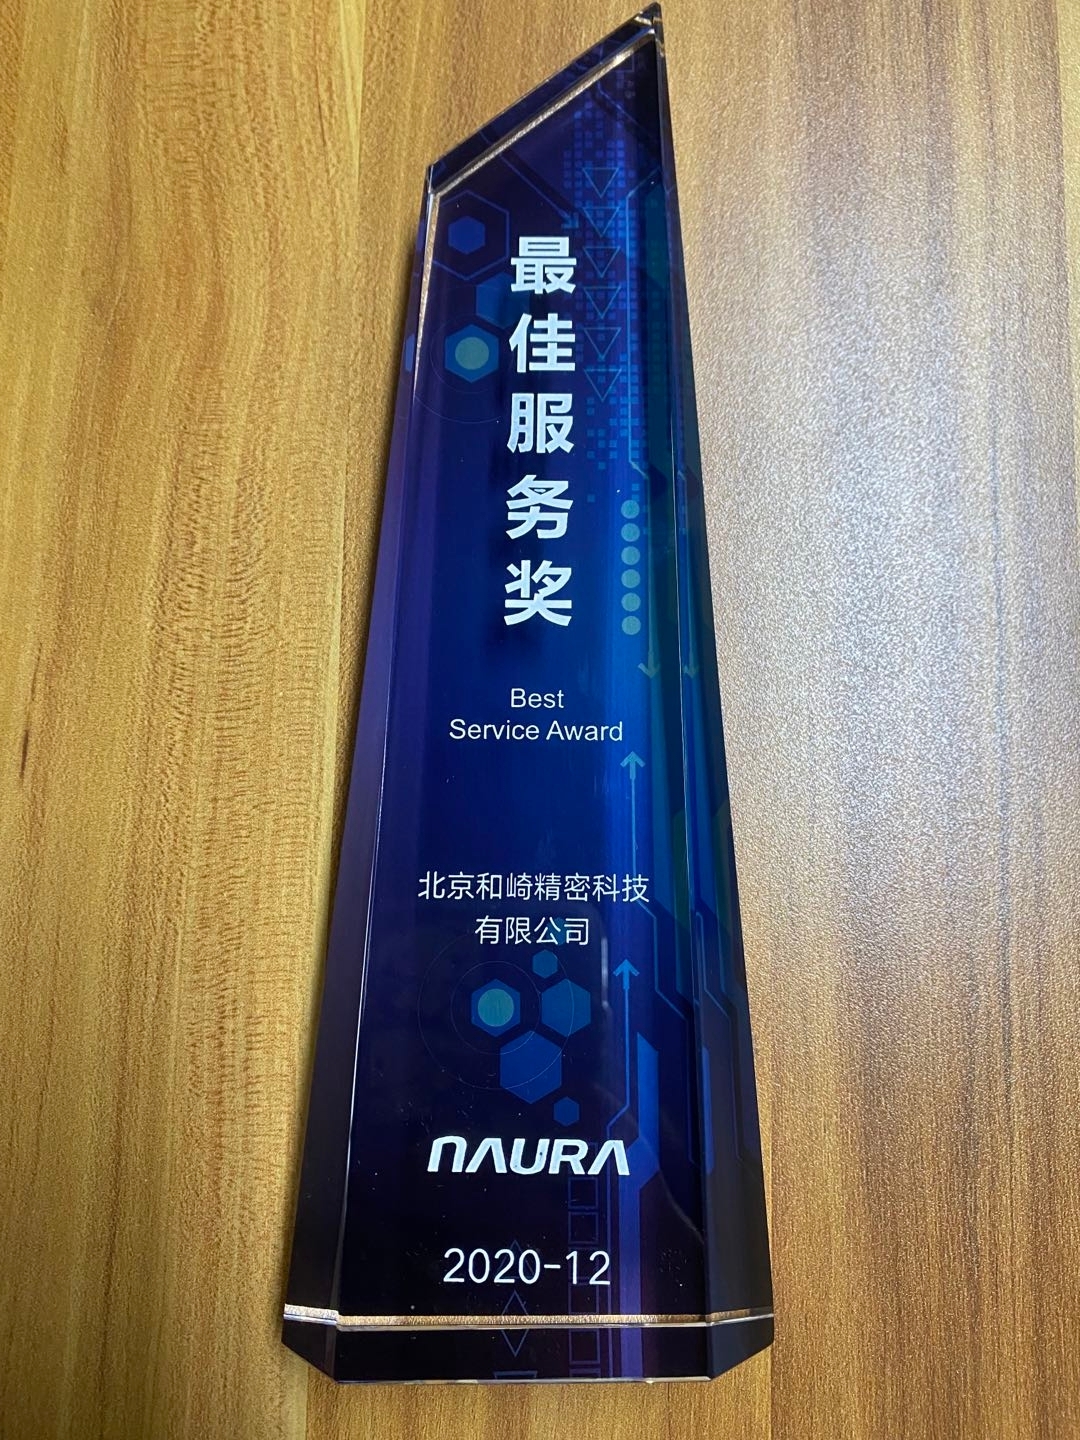 北京和崎被北方华创授予“最佳服务奖”